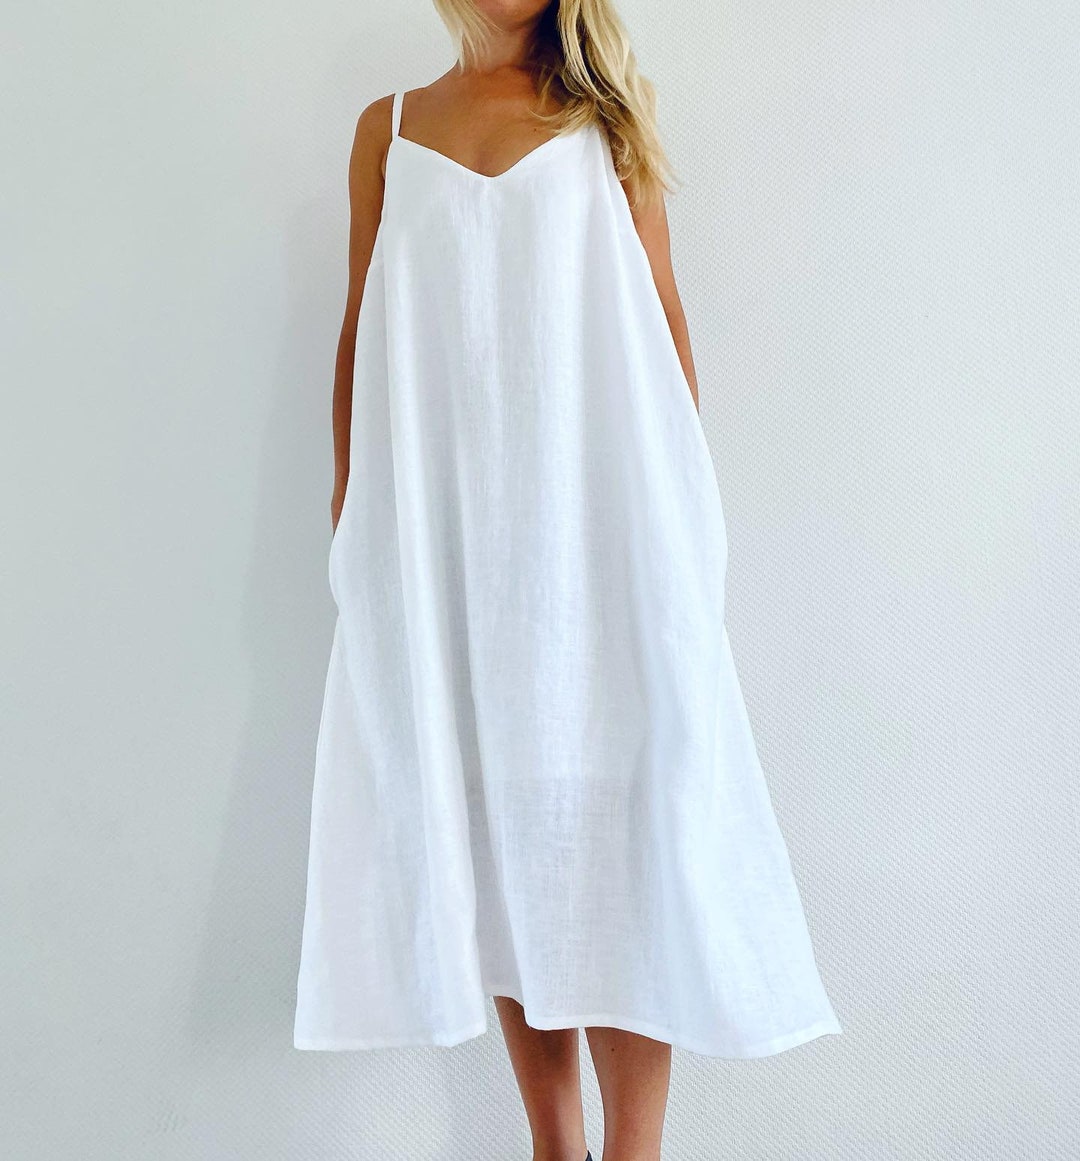 White Linen Dress / Washed Linen Summer Dress / Midi Linen Dress ...